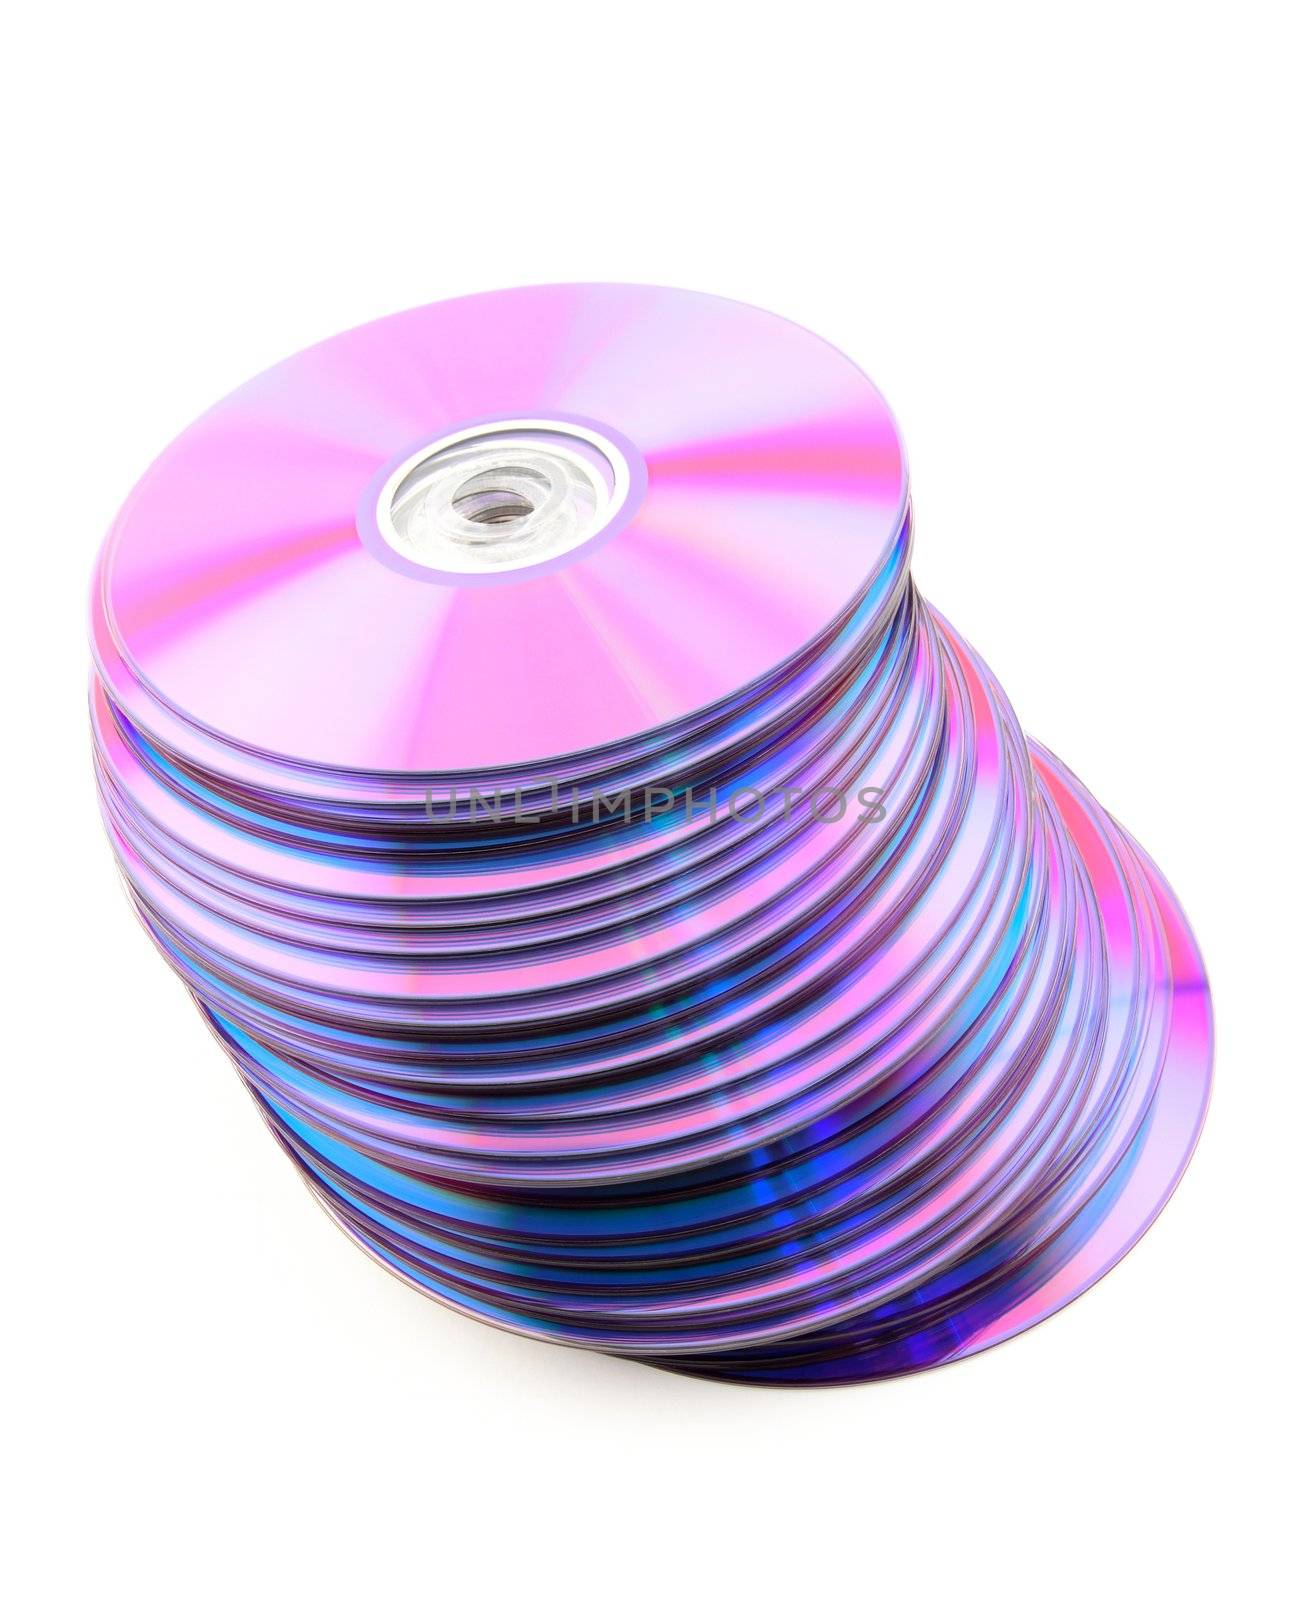 Falling heap of purple CDs by anikasalsera